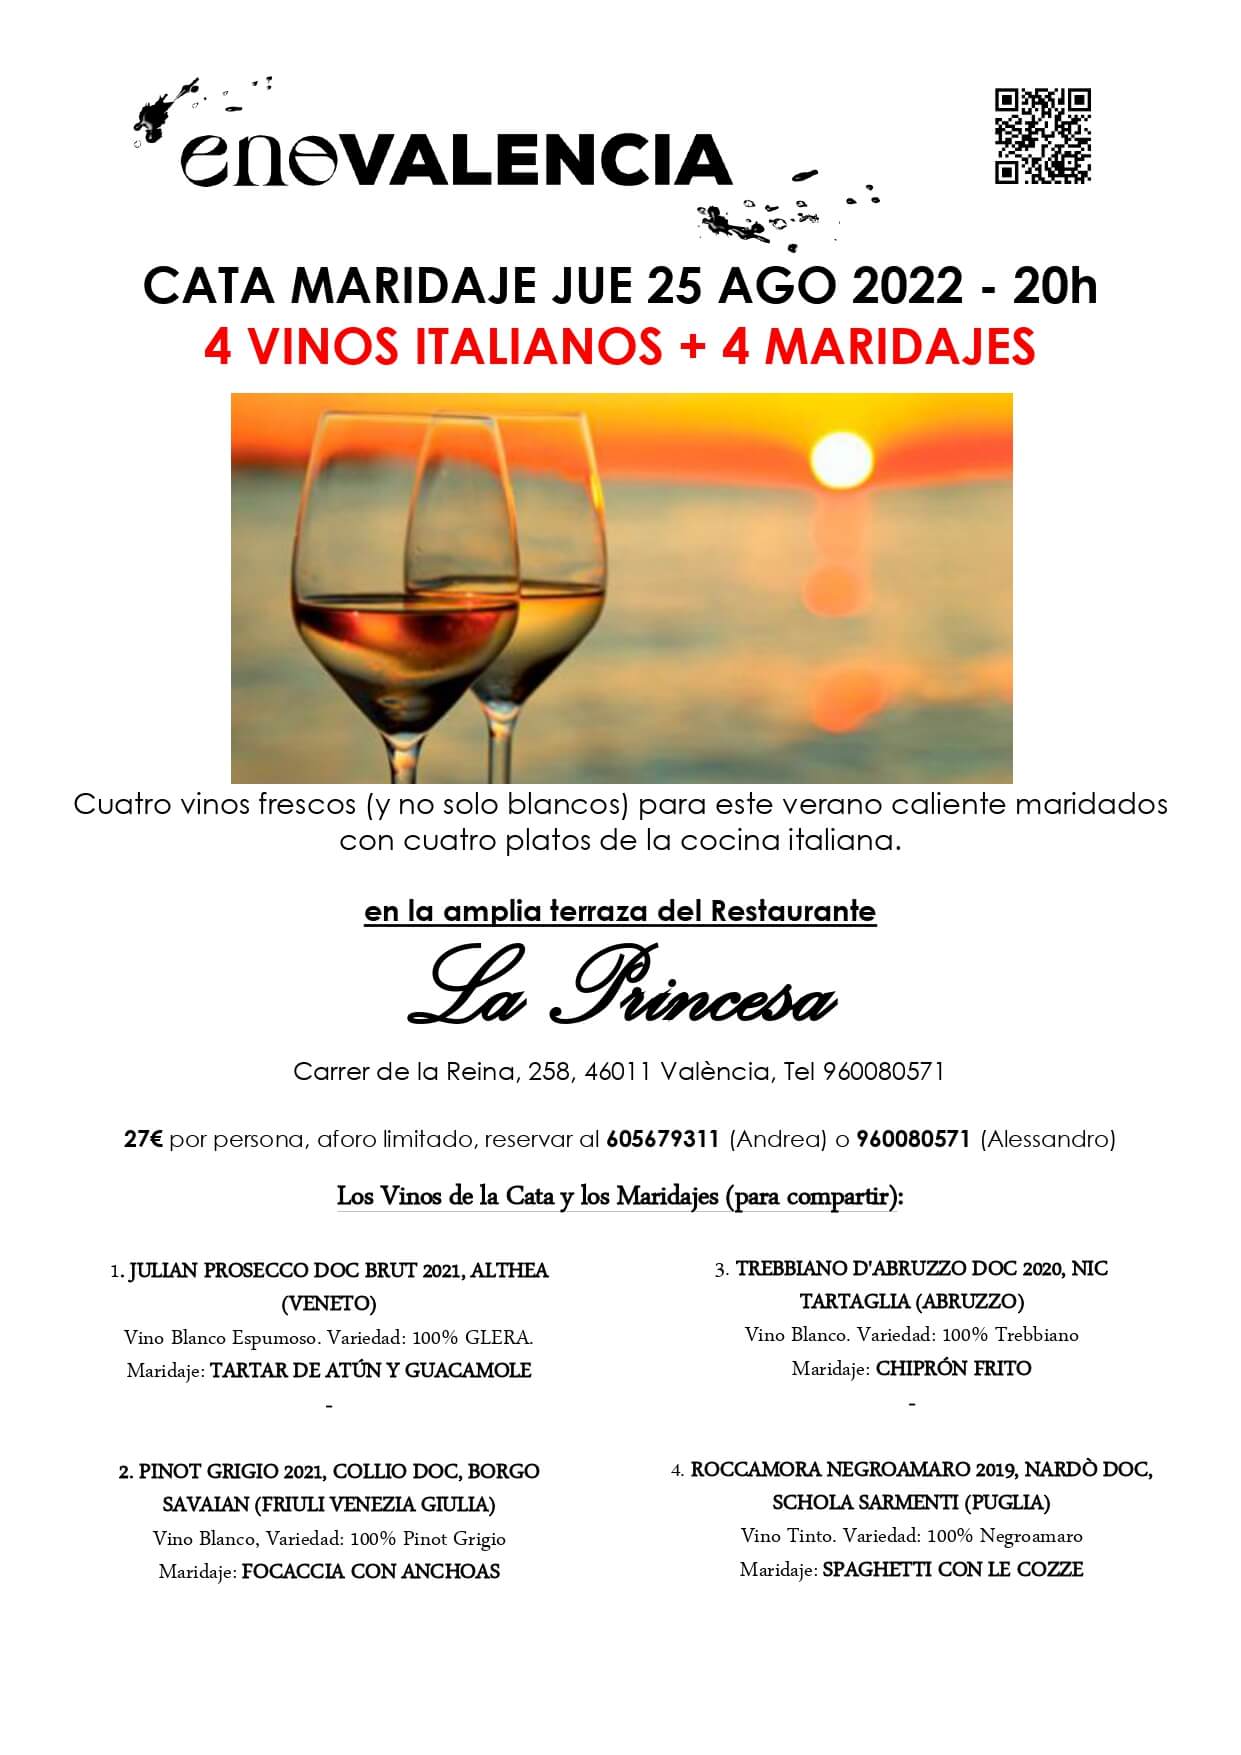 Cenas y maridajes 4 Vinos de Verano y 4 maridajes (Evento) EnoValencia - Cata, eventos y venta de vino 7